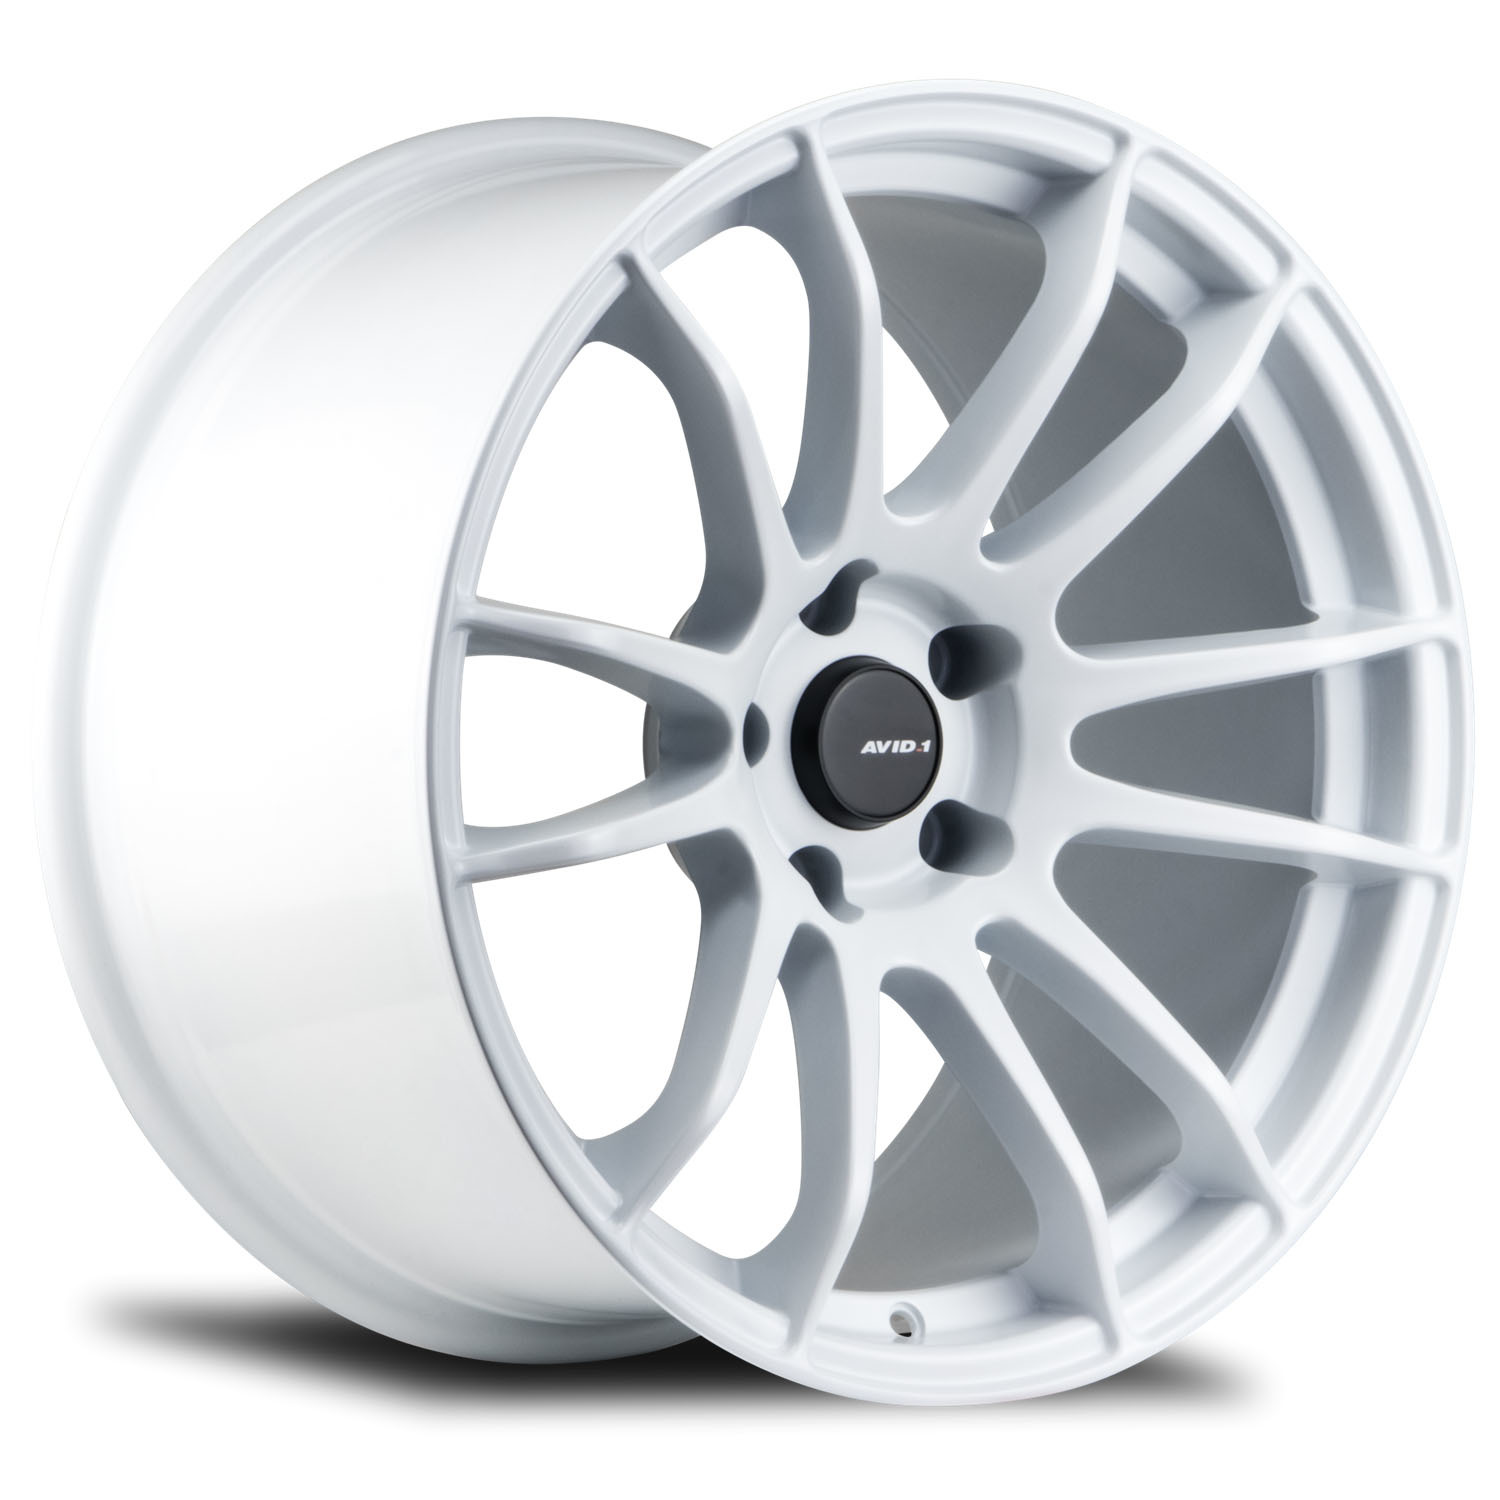 AVID1 AV.20 White light alloy wheels